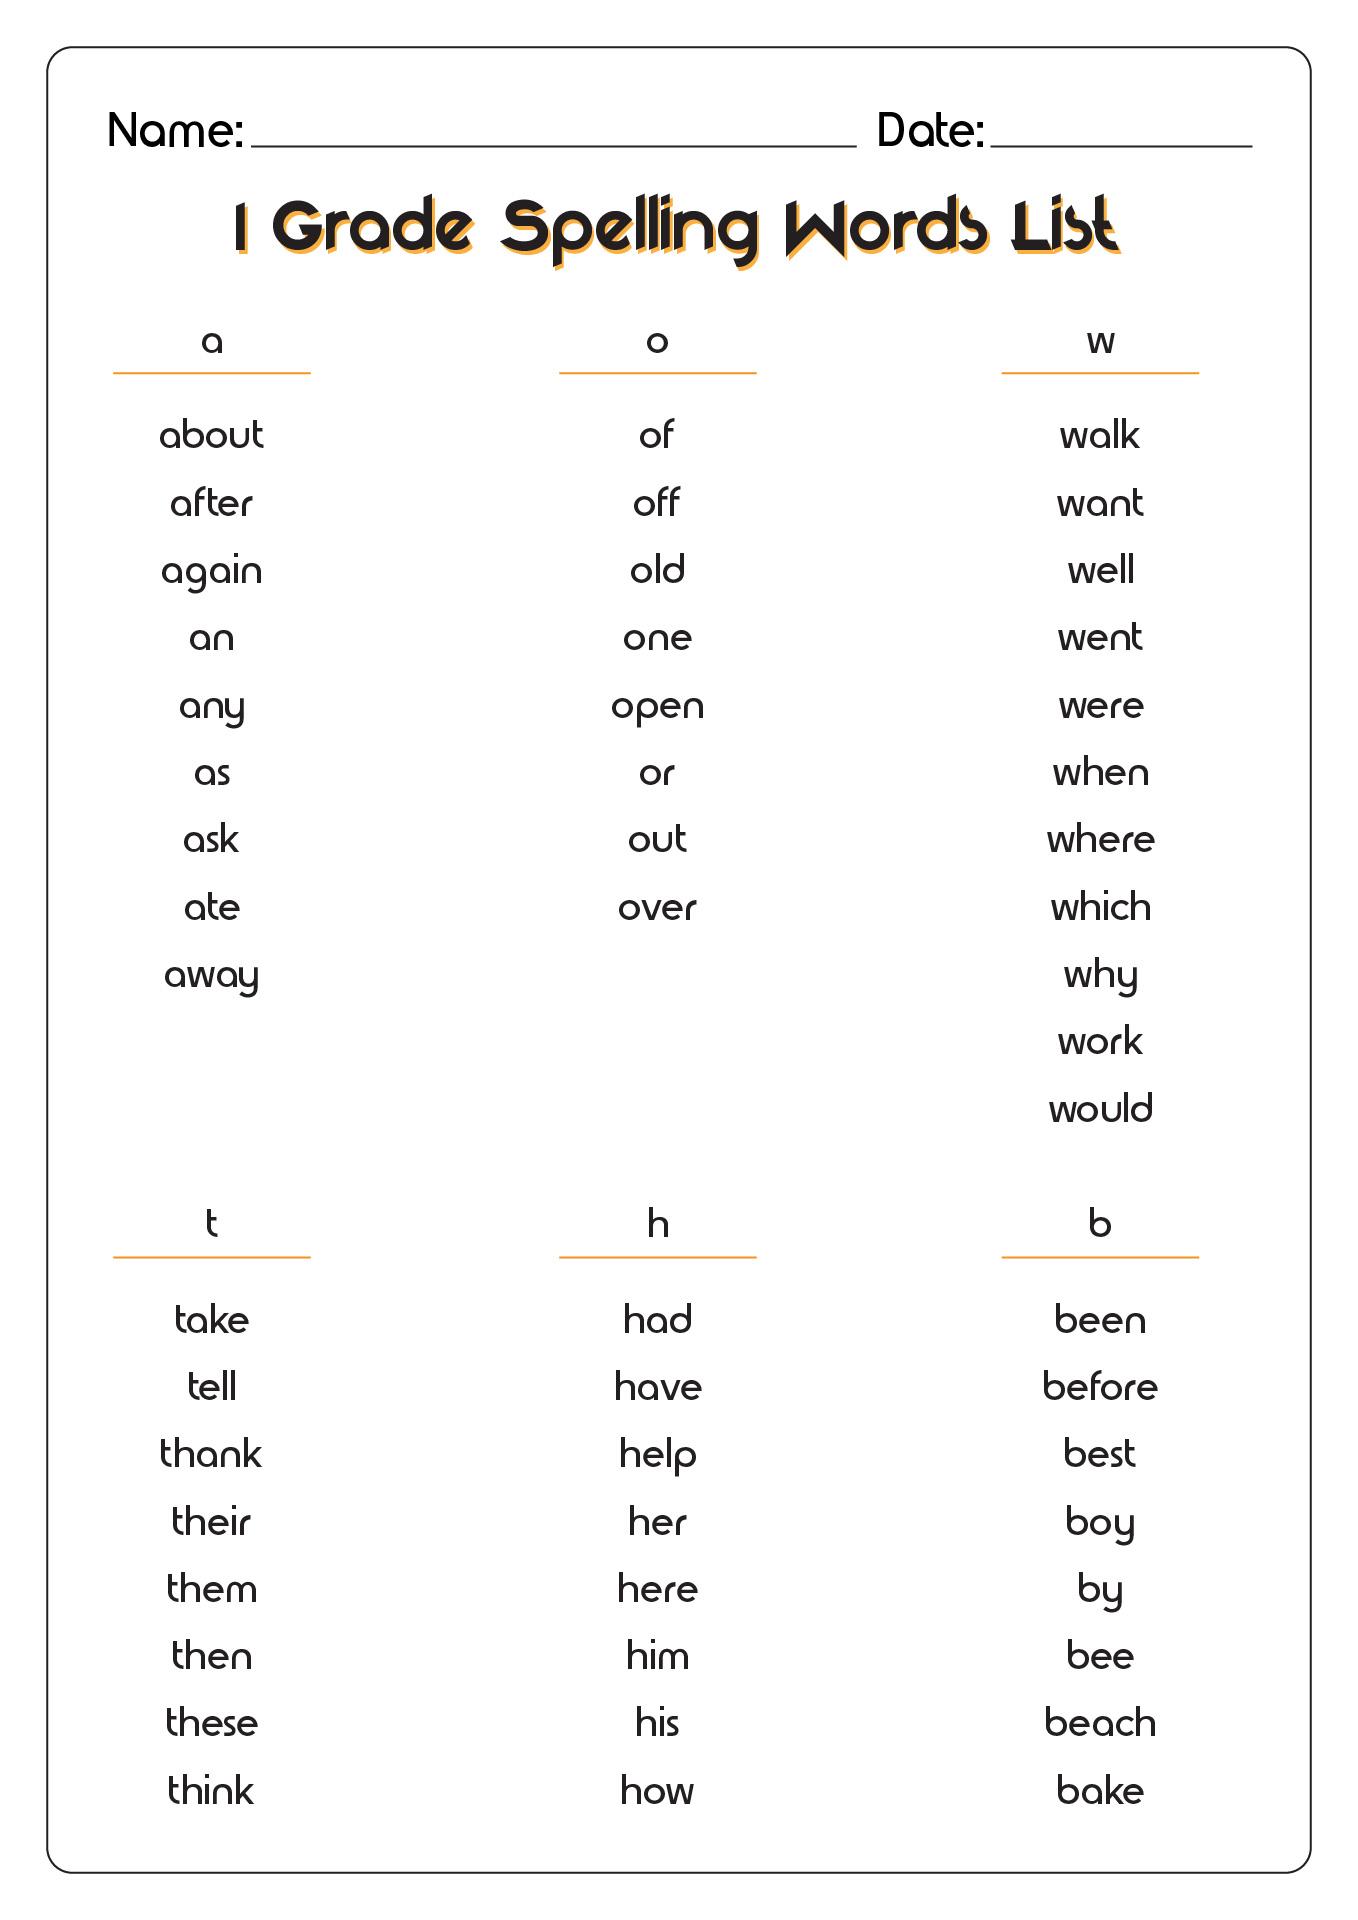 1 Grade Spelling Words List